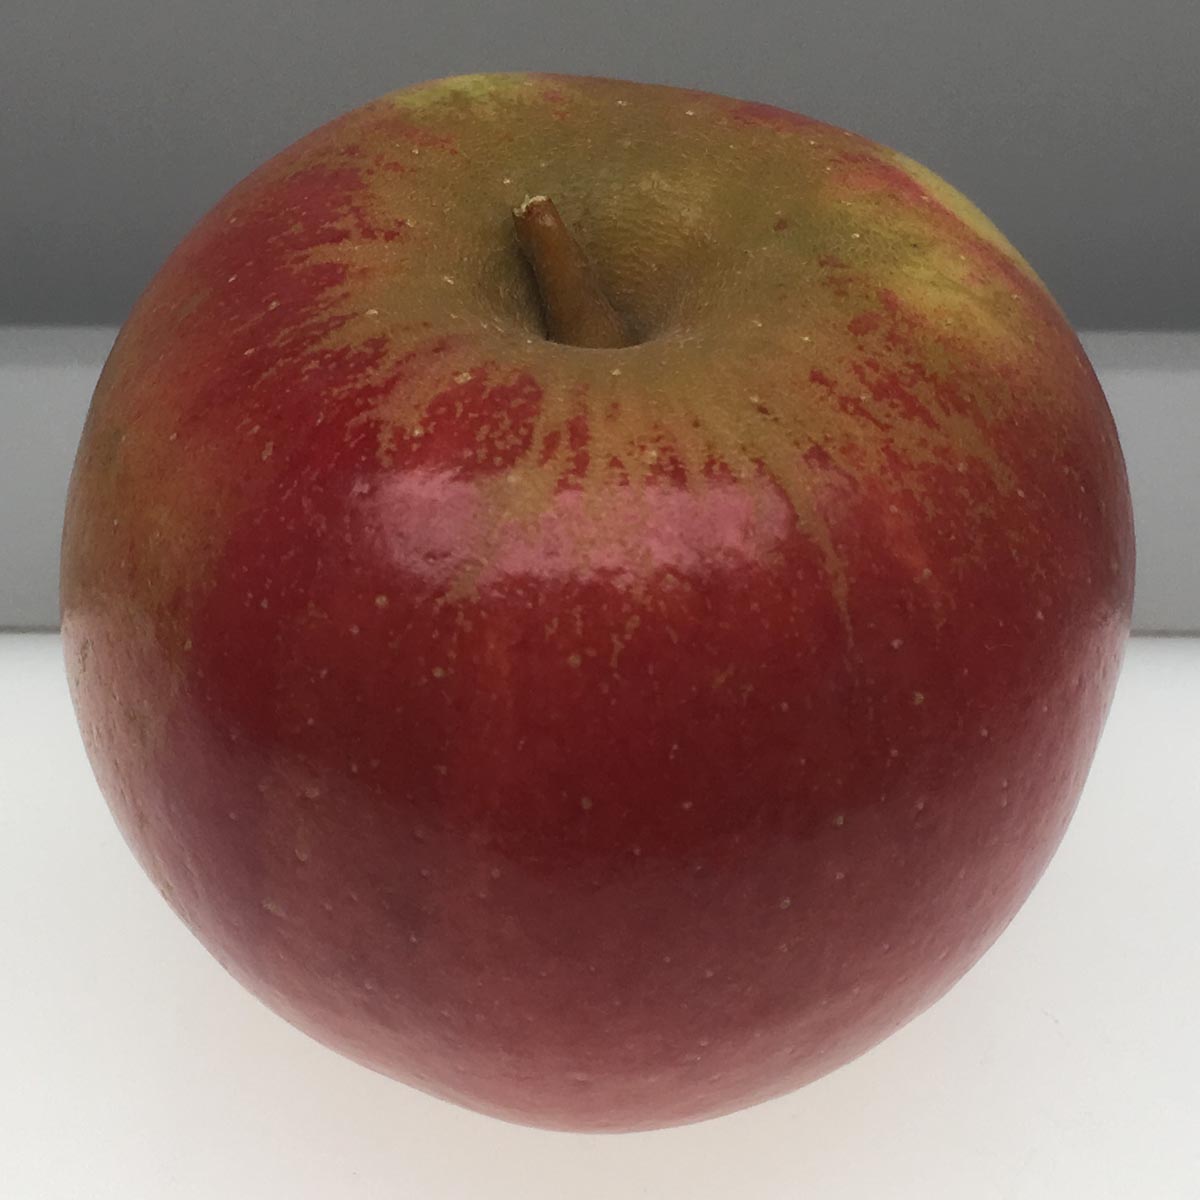 Cox's Orange Pippin apple